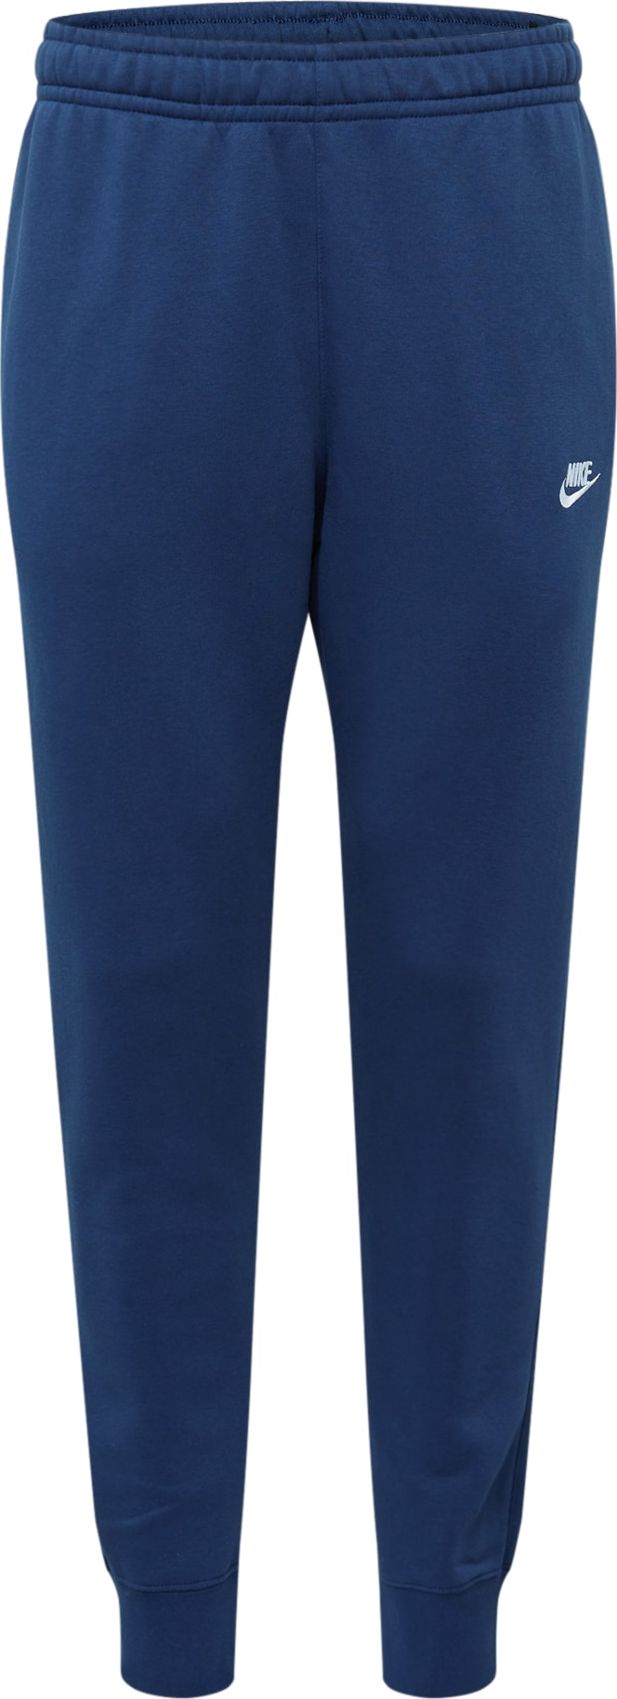 Kalhoty Nike Sportswear marine modrá